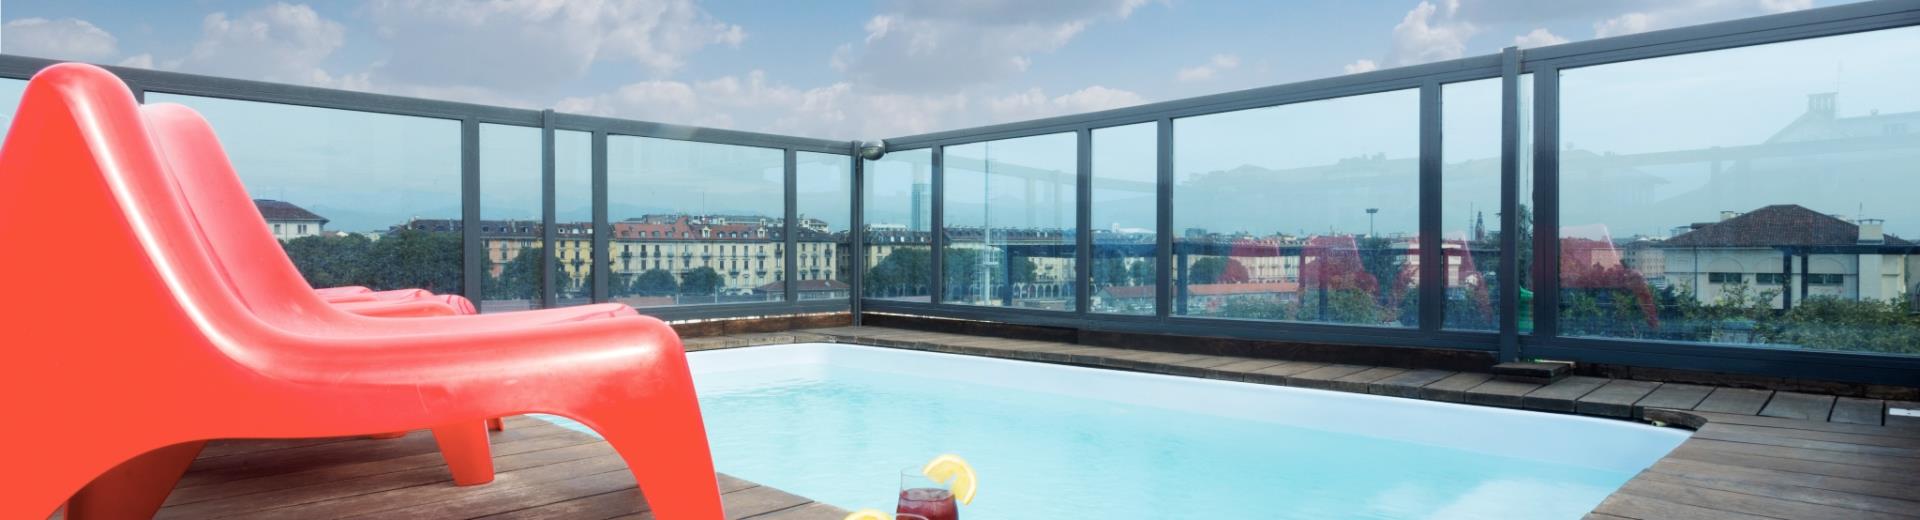 Best Western Plus Executive Suiten, 4-Sterne-Hotel befindet sich im Zentrum von Turin, bietet seinen Gästen eine Oase der Entspannung ganz besonderes: in der obersten Etage der Gebäude gibt es & #232; Dachgarten, wo & #232; genießen die schöne Aussicht auf die Stadt & #224; einweichen in das Freibad.
 
Die herrliche Terrasse am Executive Hotel Turin & #232; mit Eleganz und Stil mit natürlichen Materialien wie Holz und Glas schaffen eine entspannende Atmosphäre ideal zum Entspannen im Whirlpool im Hintergrund das imposante eingerichtet Olympic Mountains Turin.